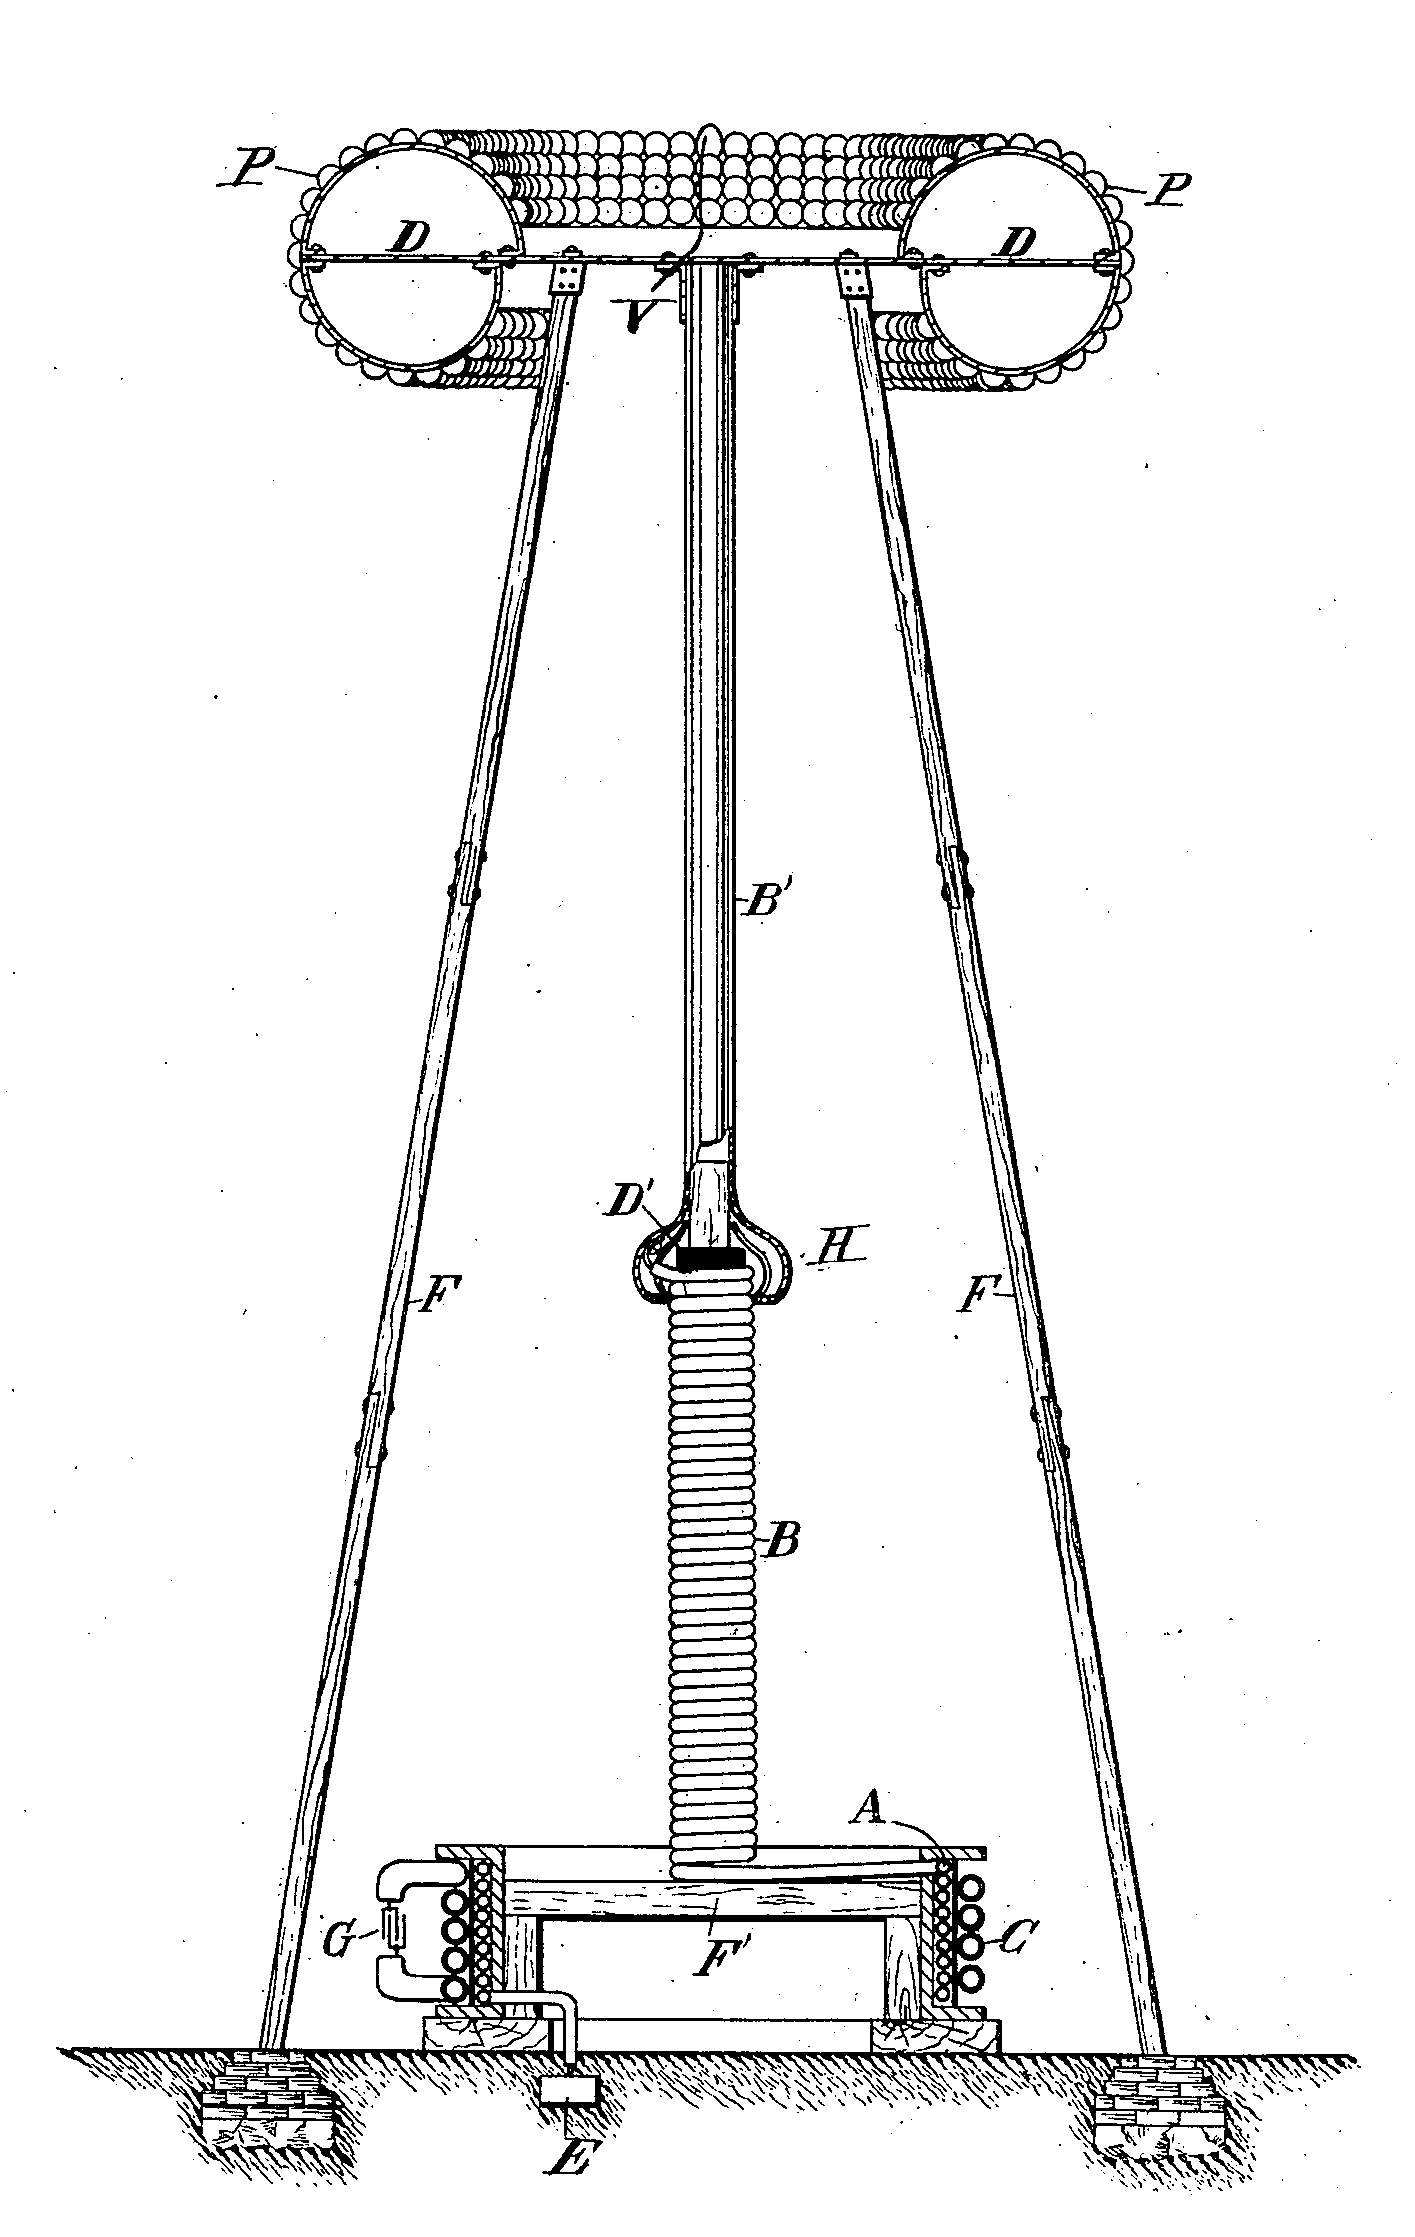 Изображение из патента Теслы на «устройство для передачи электрической энергии», 1907 год